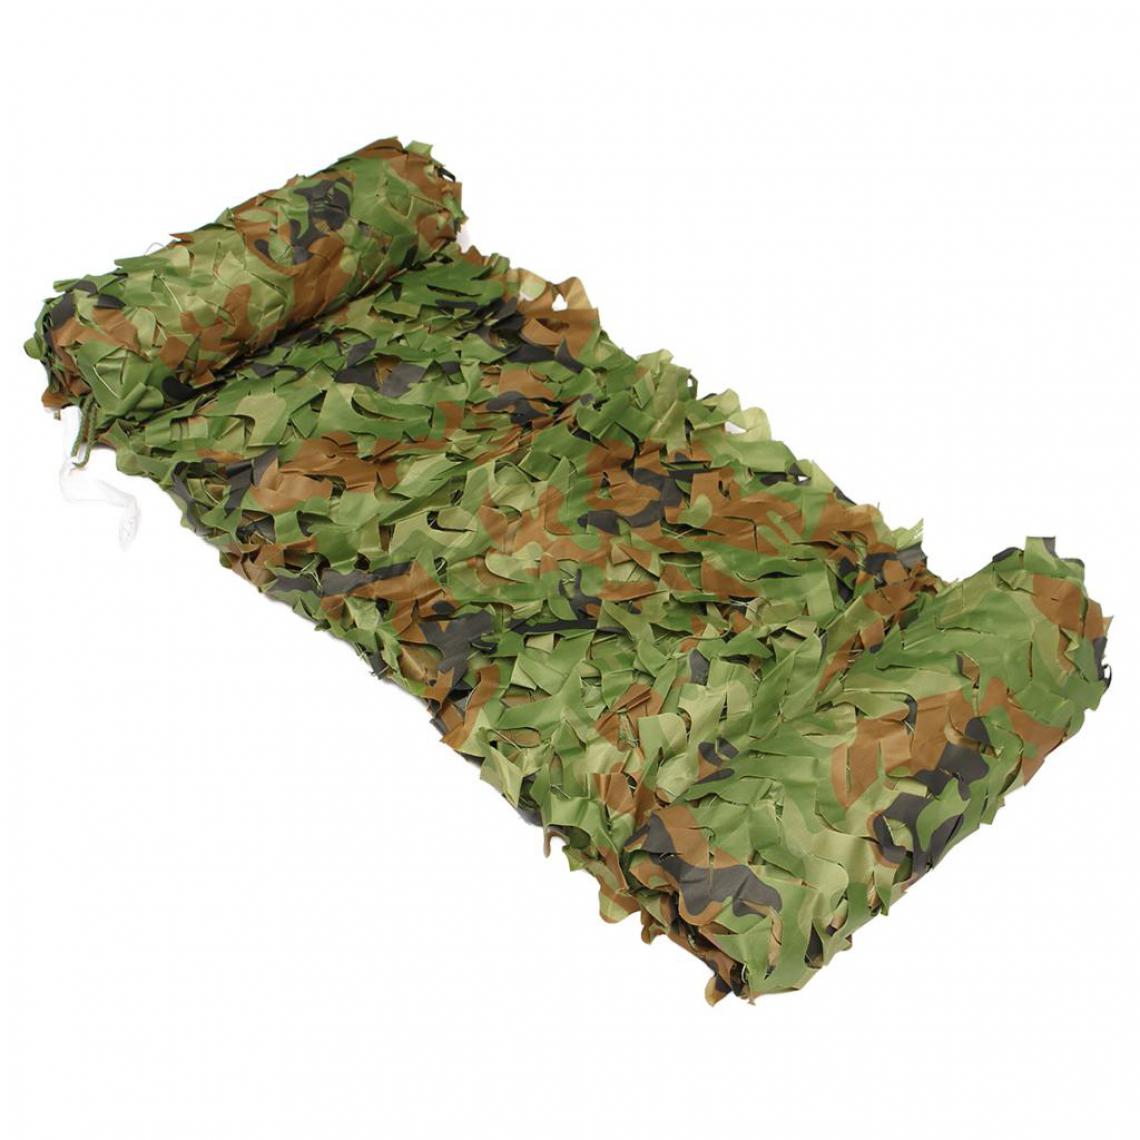 marque generique - Chasse Camping Forêt Militaire Camouflage Filet Camouflage Couverture De Filet 3m X 3m - Avions